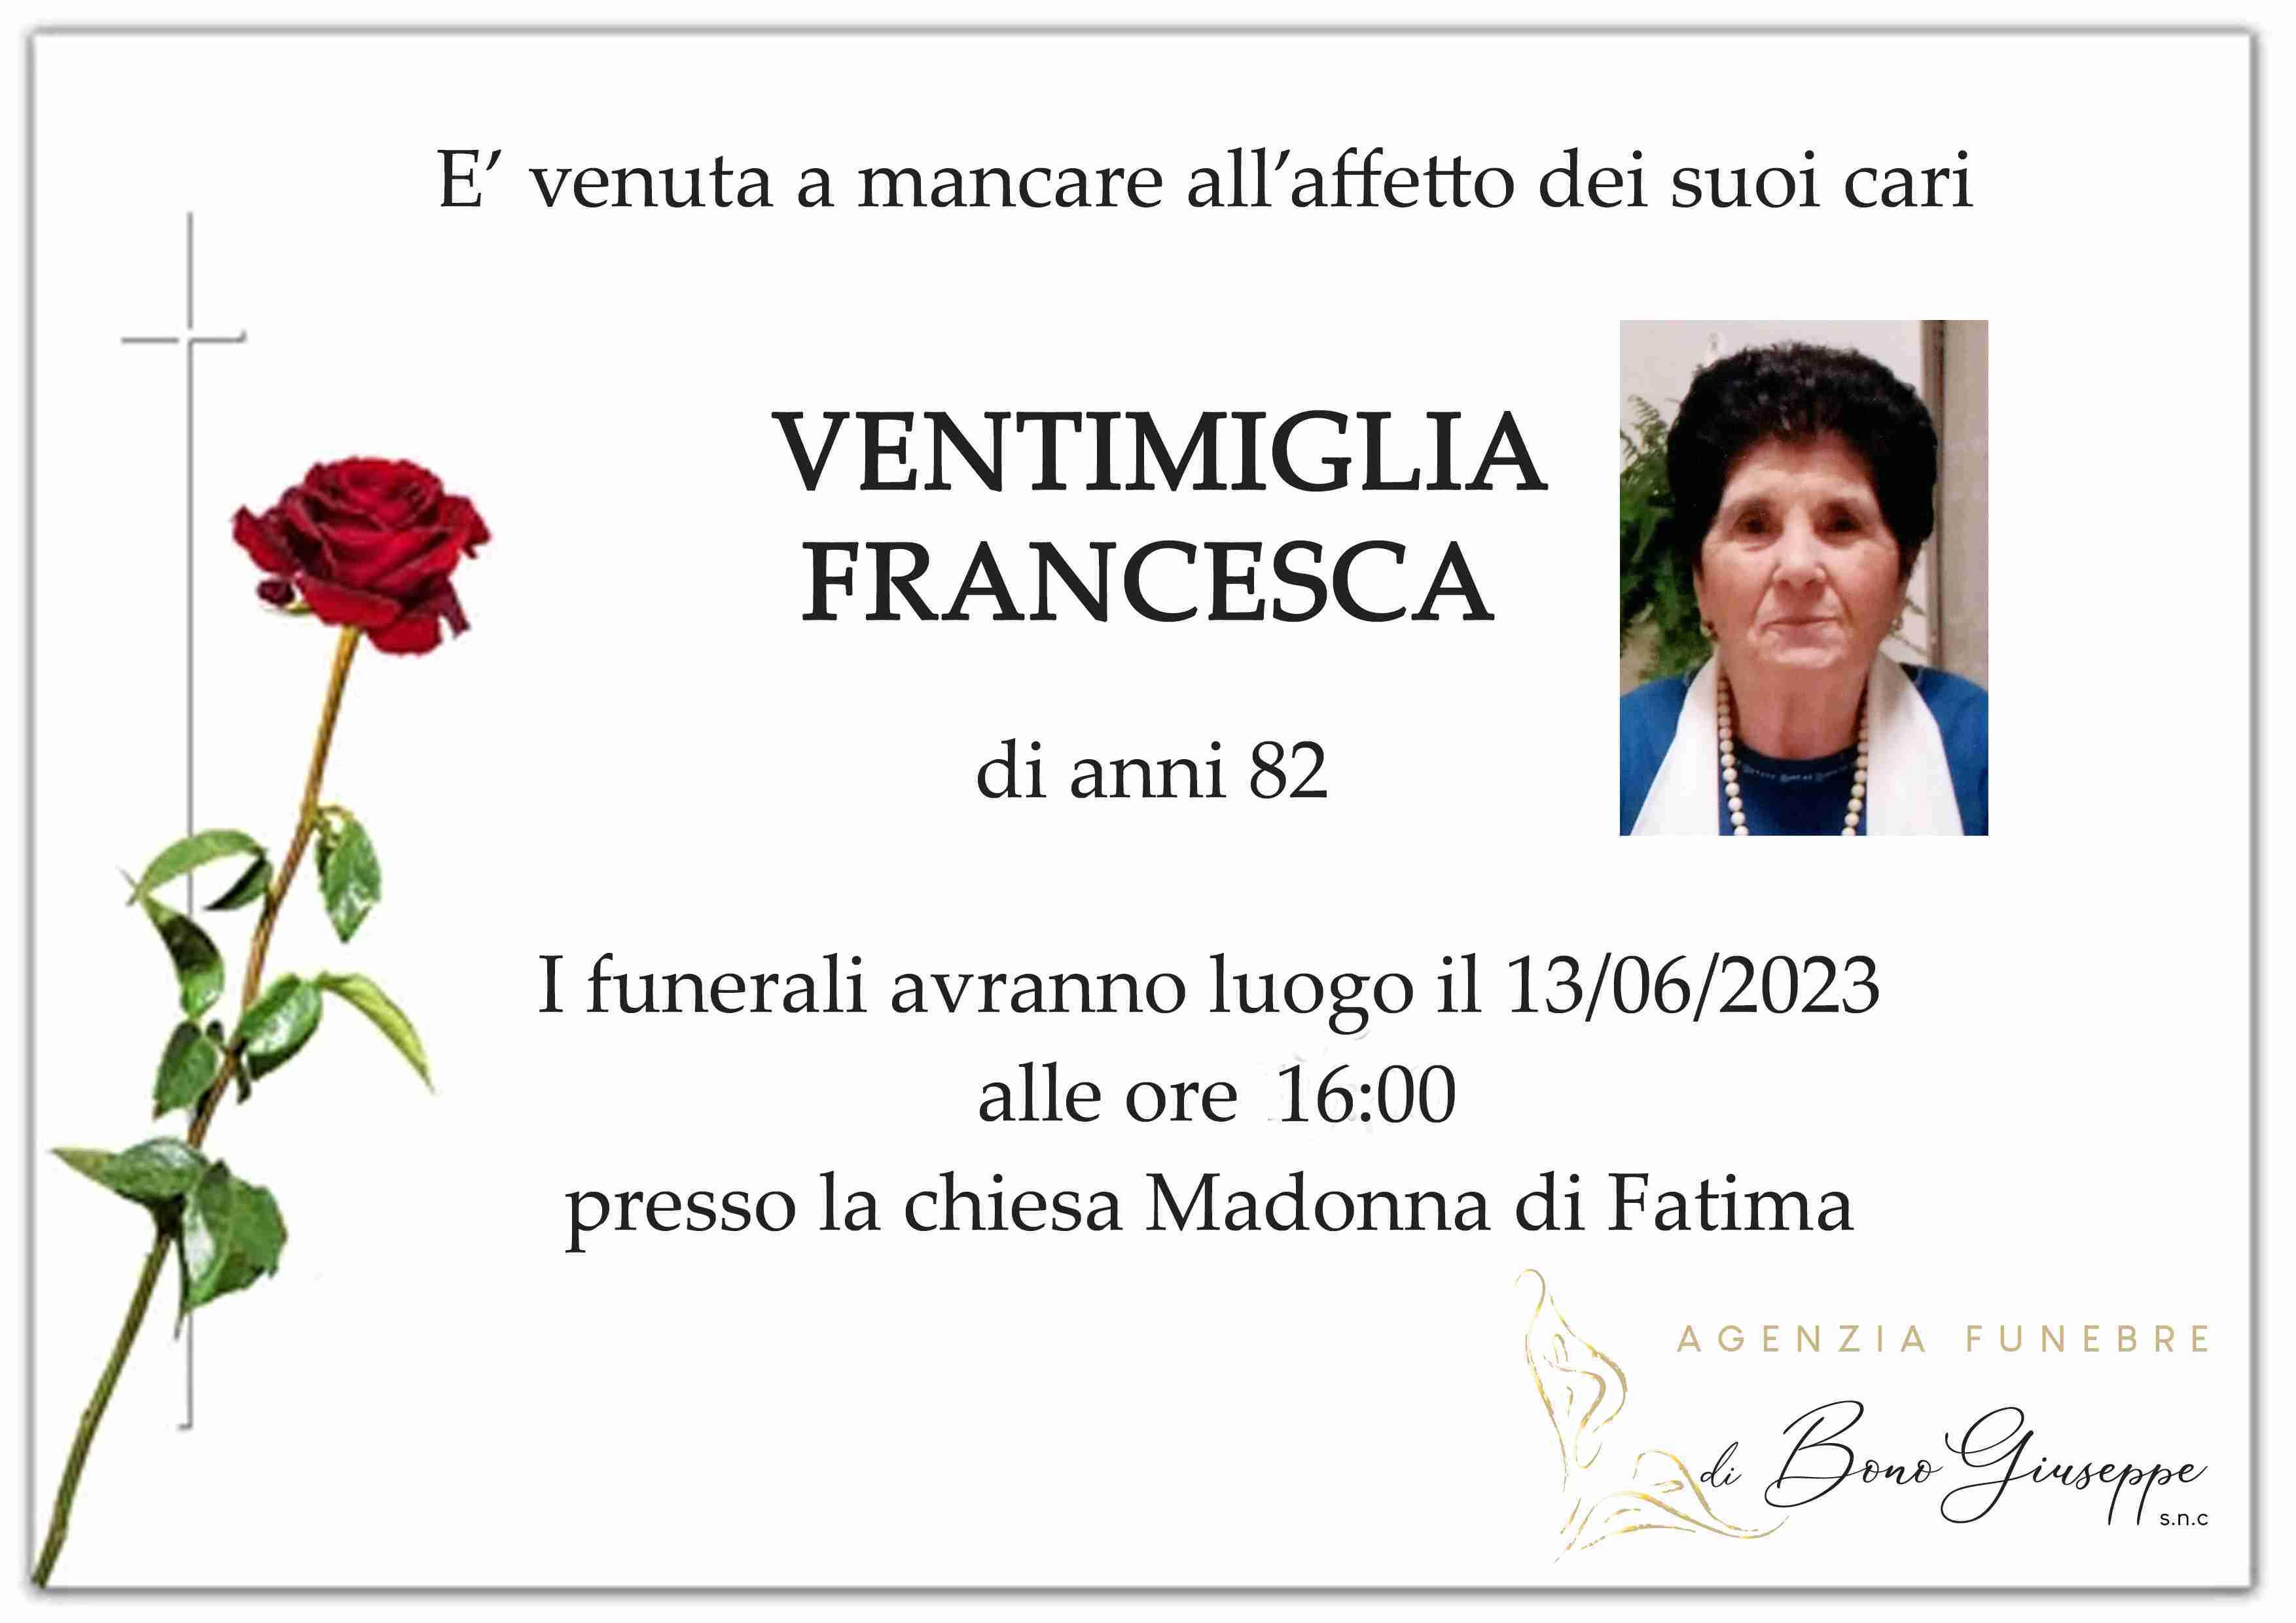 Francesca Ventimiglia